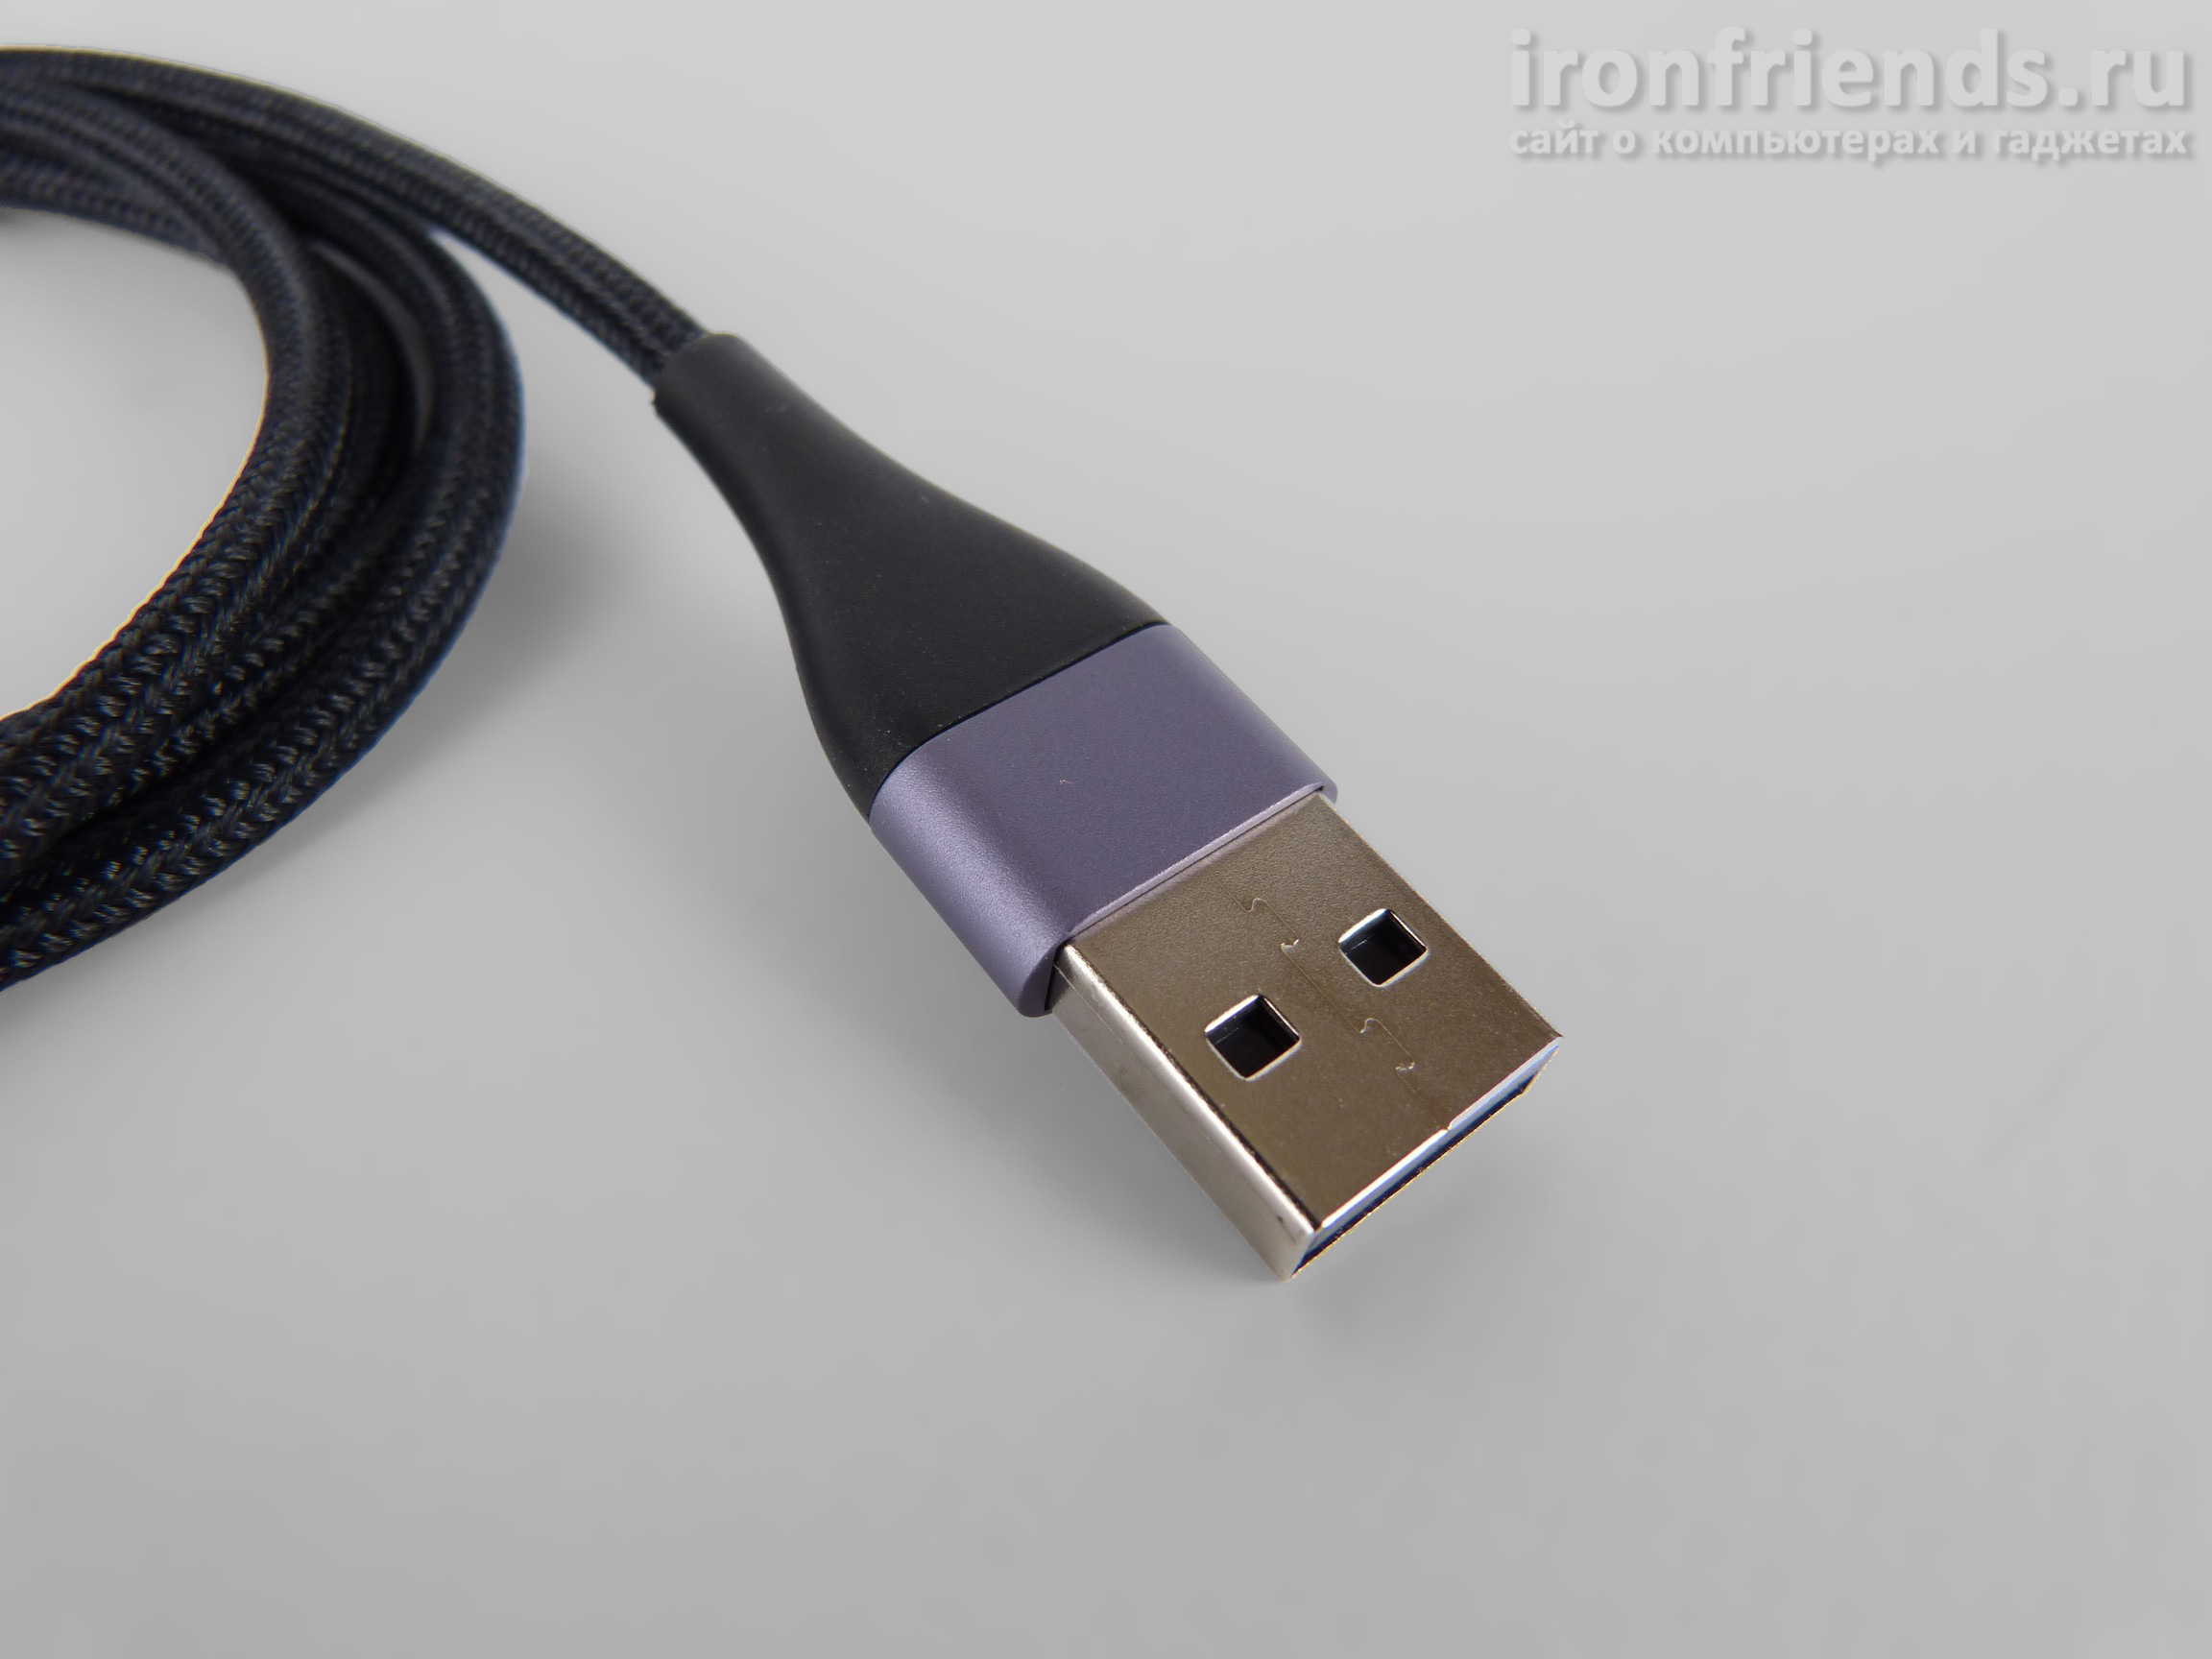 Разъем USB кабеля Ugreen с прямоугольным коннектором